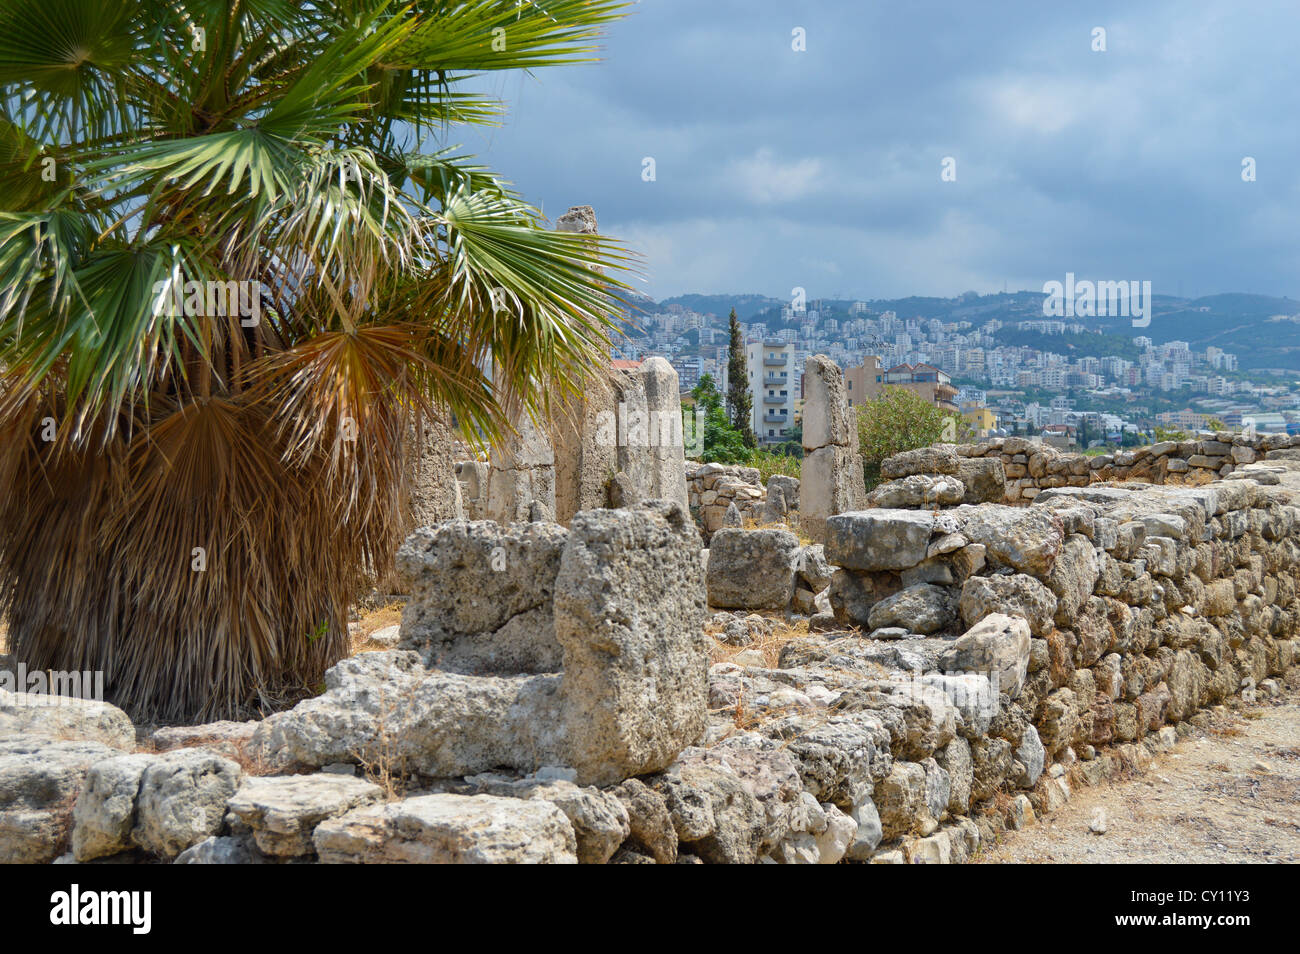 Le Temple de l'obélisques dans la ville phénicienne de Byblos, Liban, habité de manière continue depuis 7000 ans. Banque D'Images